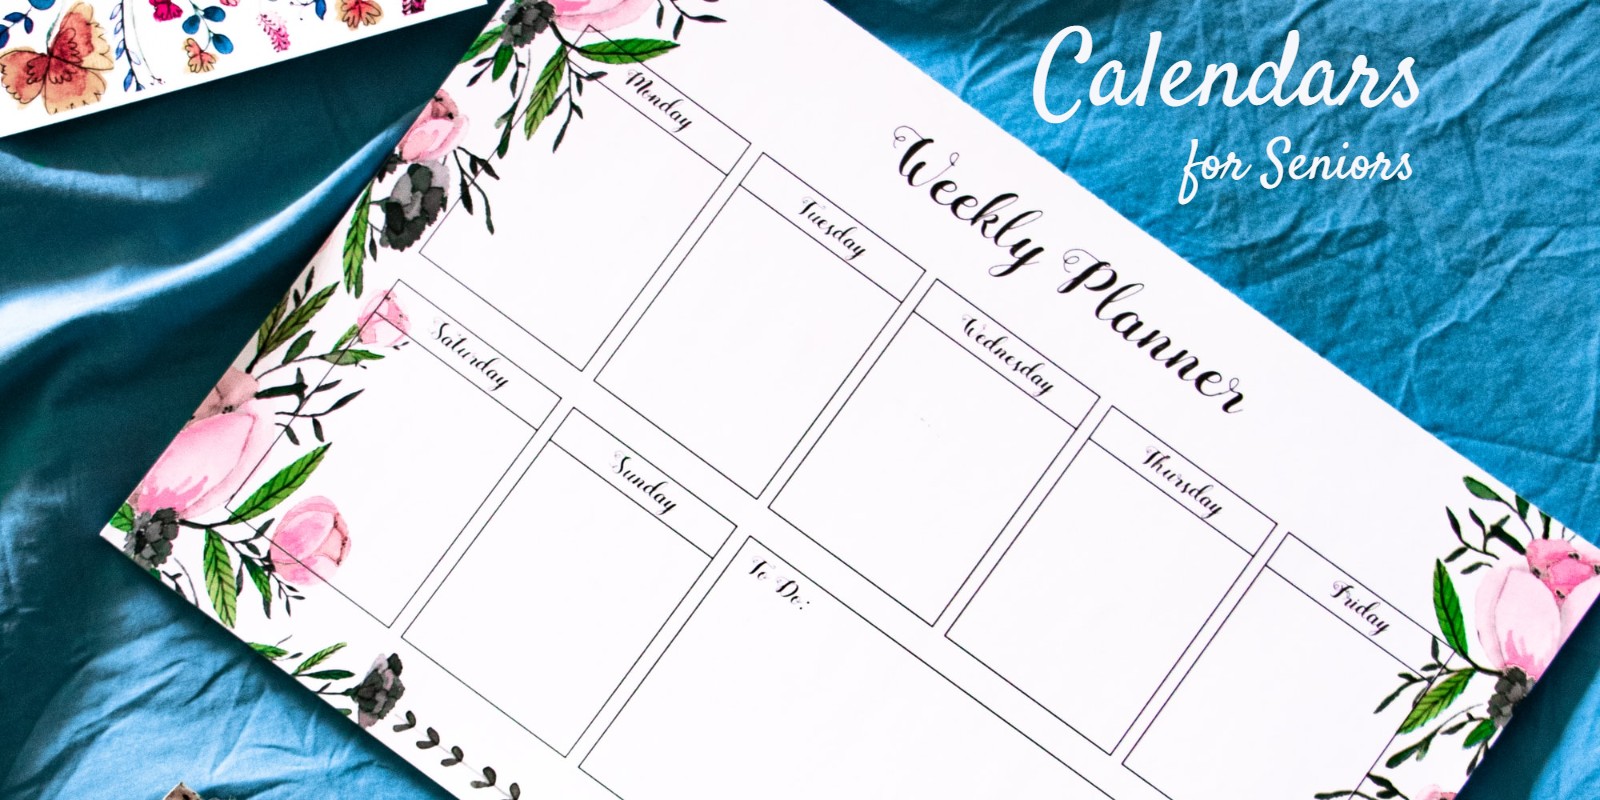 Useful Calendars for Seniors